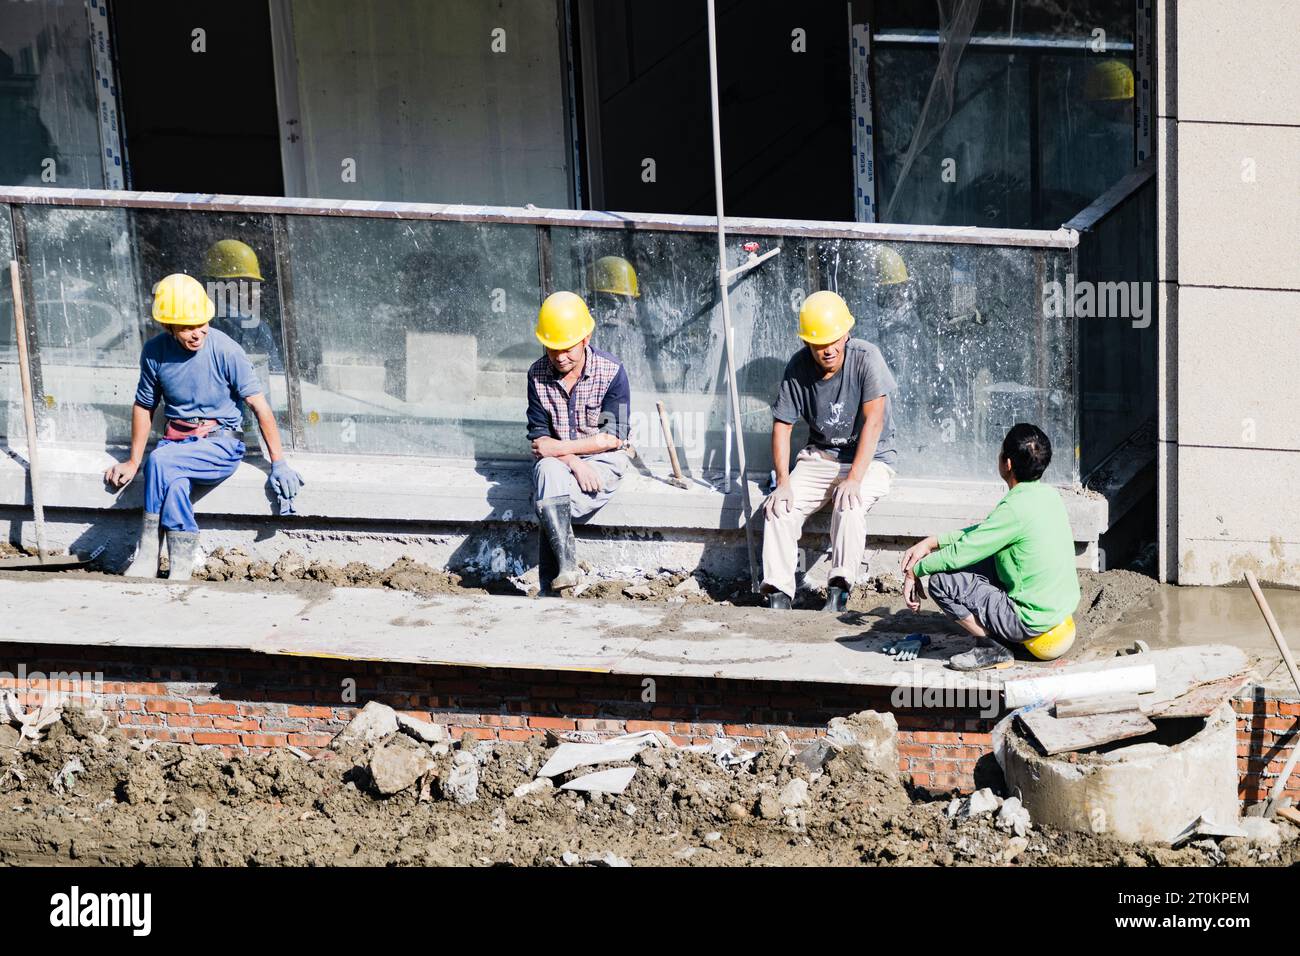 An einem sonnigen Tag sitzen einige Arbeiter an der Mauer, um sich auszuruhen, während andere auf ihren Hüten sitzen, um eine Pause einzulegen. Stockfoto